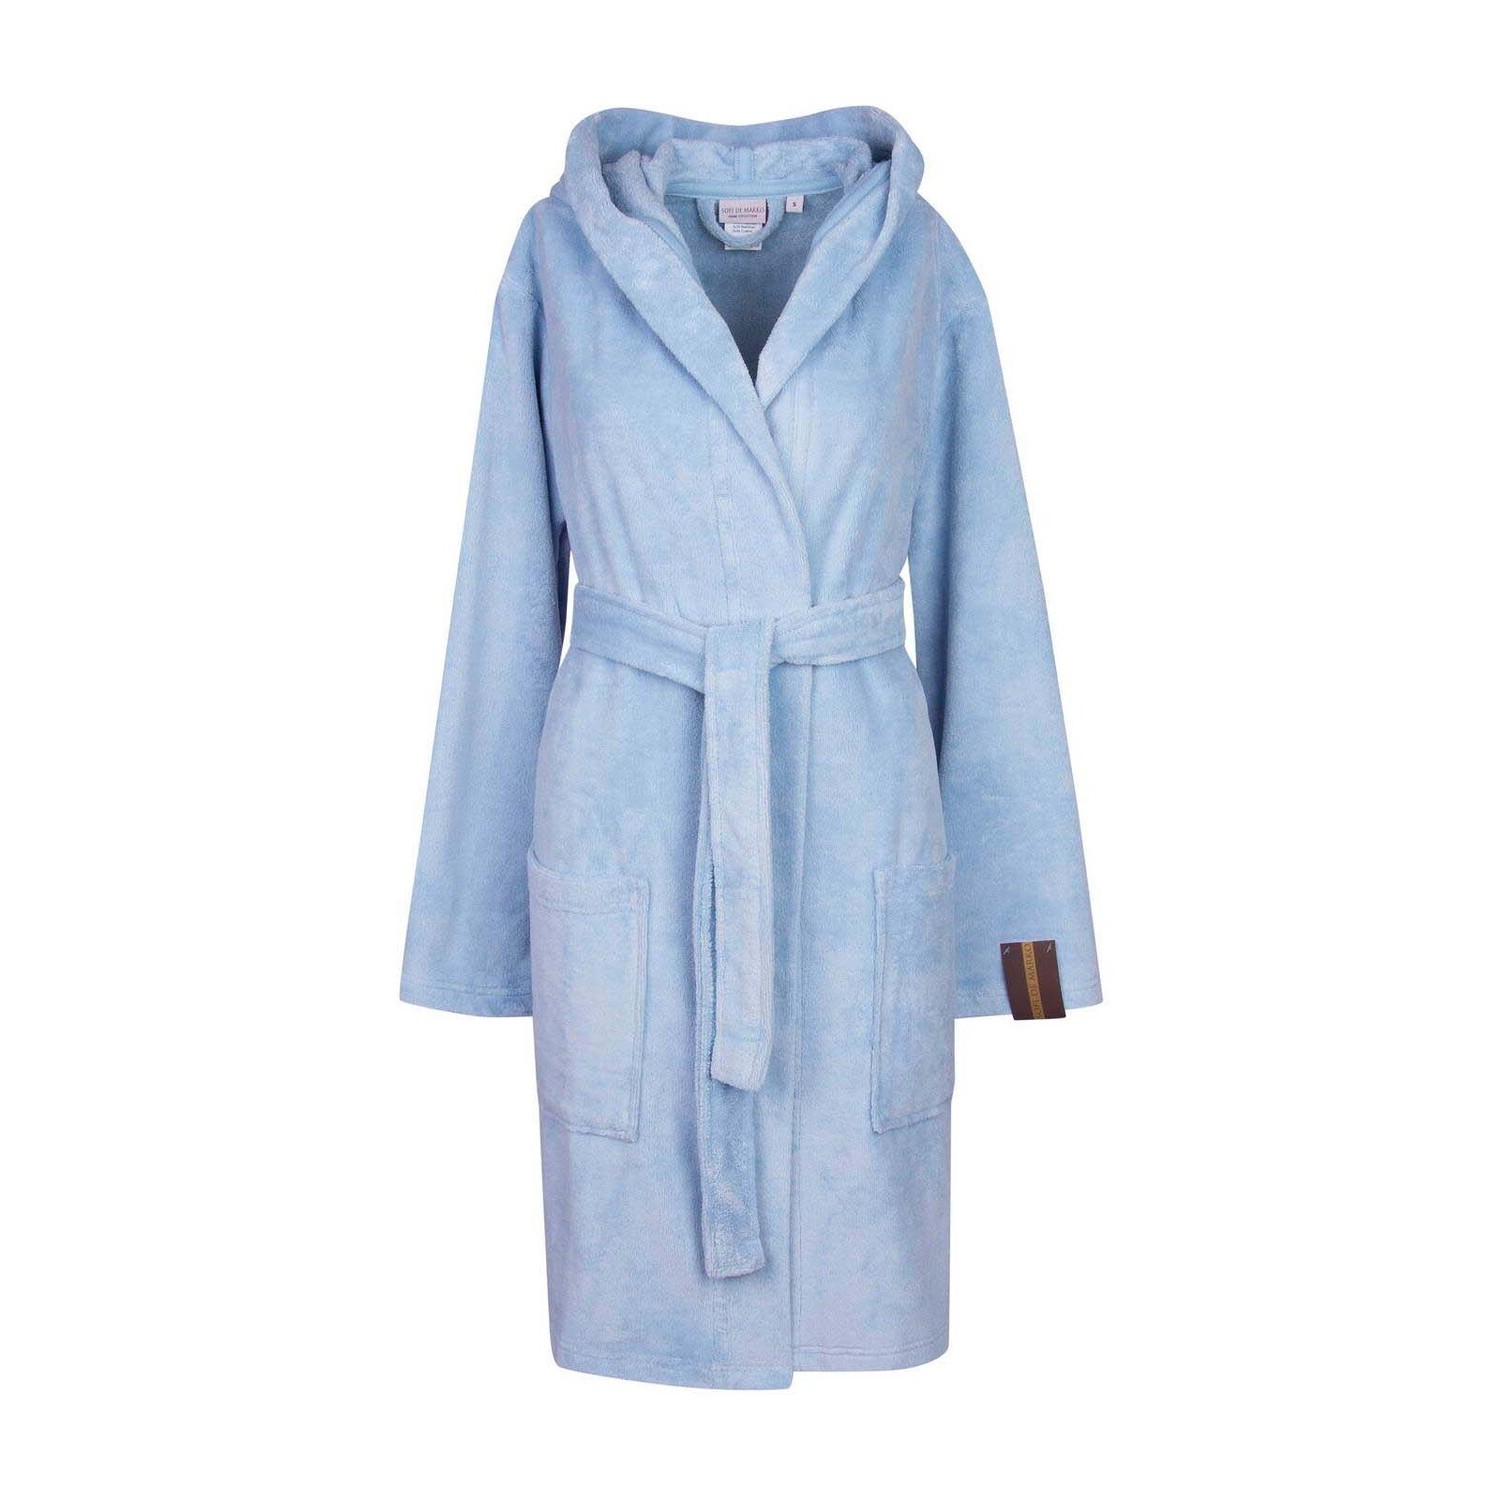 Банный халат Шанти цвет: голубой (M)